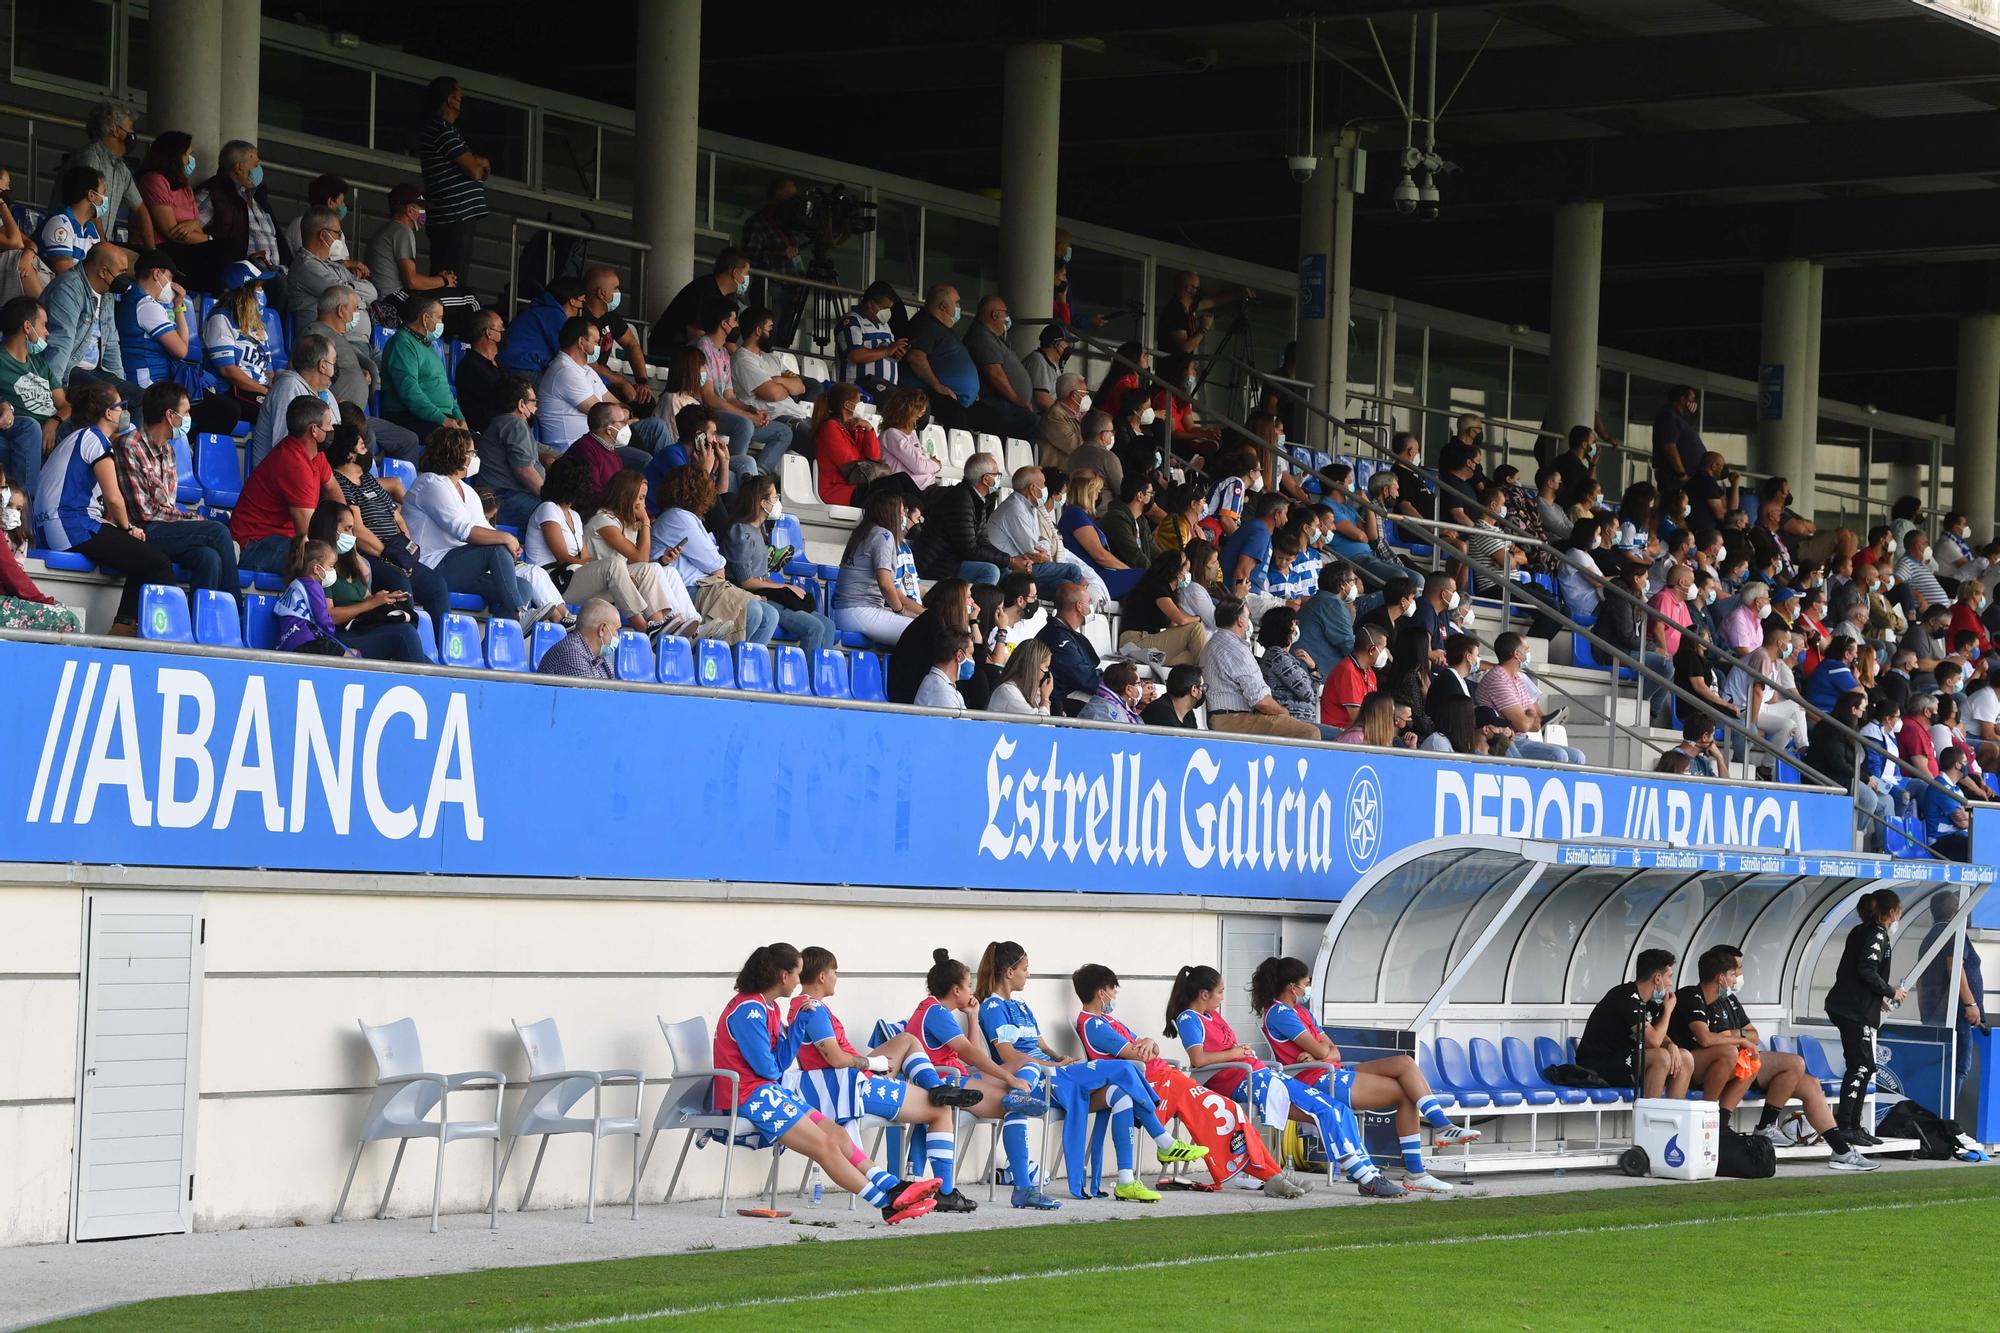 El Dépor Abanca doblega 1-0 en el último minuto al Sporting